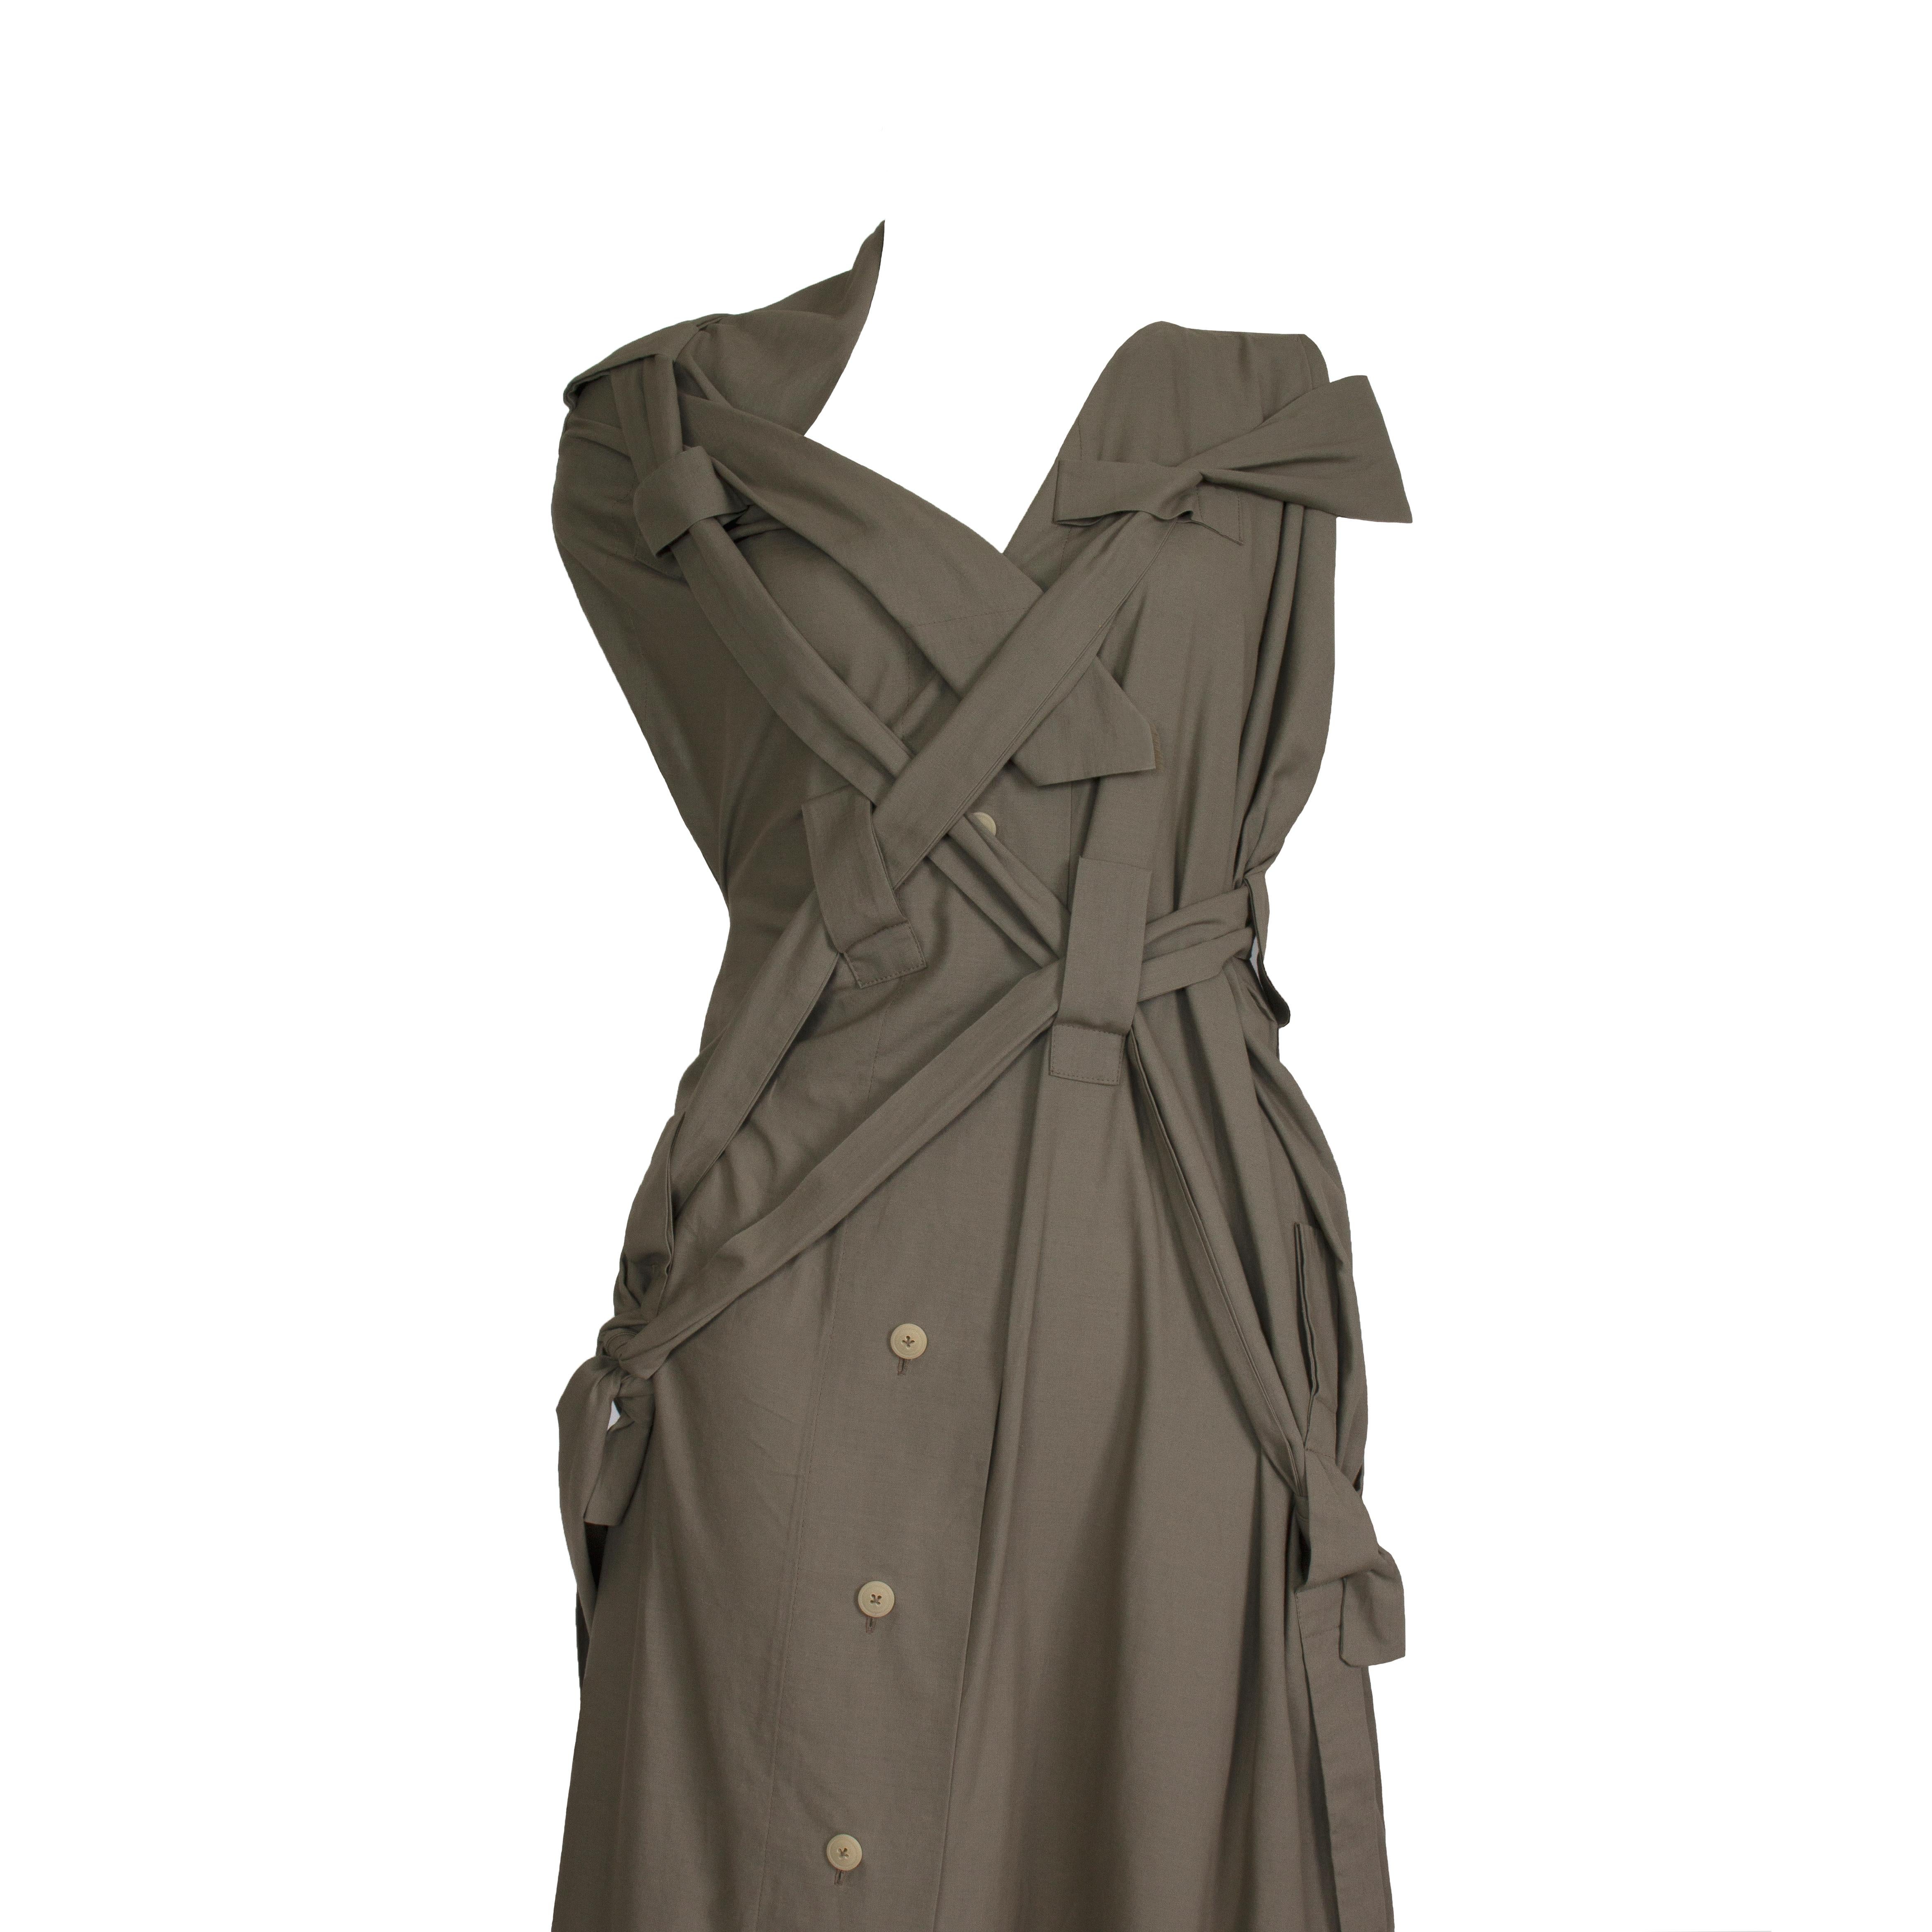 Vivienne Westwood - Gold Label - ‘Bondage’ Dress  -  Asymmetric Shoulder Detail - Strap & Tie Details Throughout Back + Front Dress -  Front Button Fasten - x 2 Side Pockets
Label: Vivienne Westwood - Gold Label
Fabric Content: 100% Cotton - Khaki